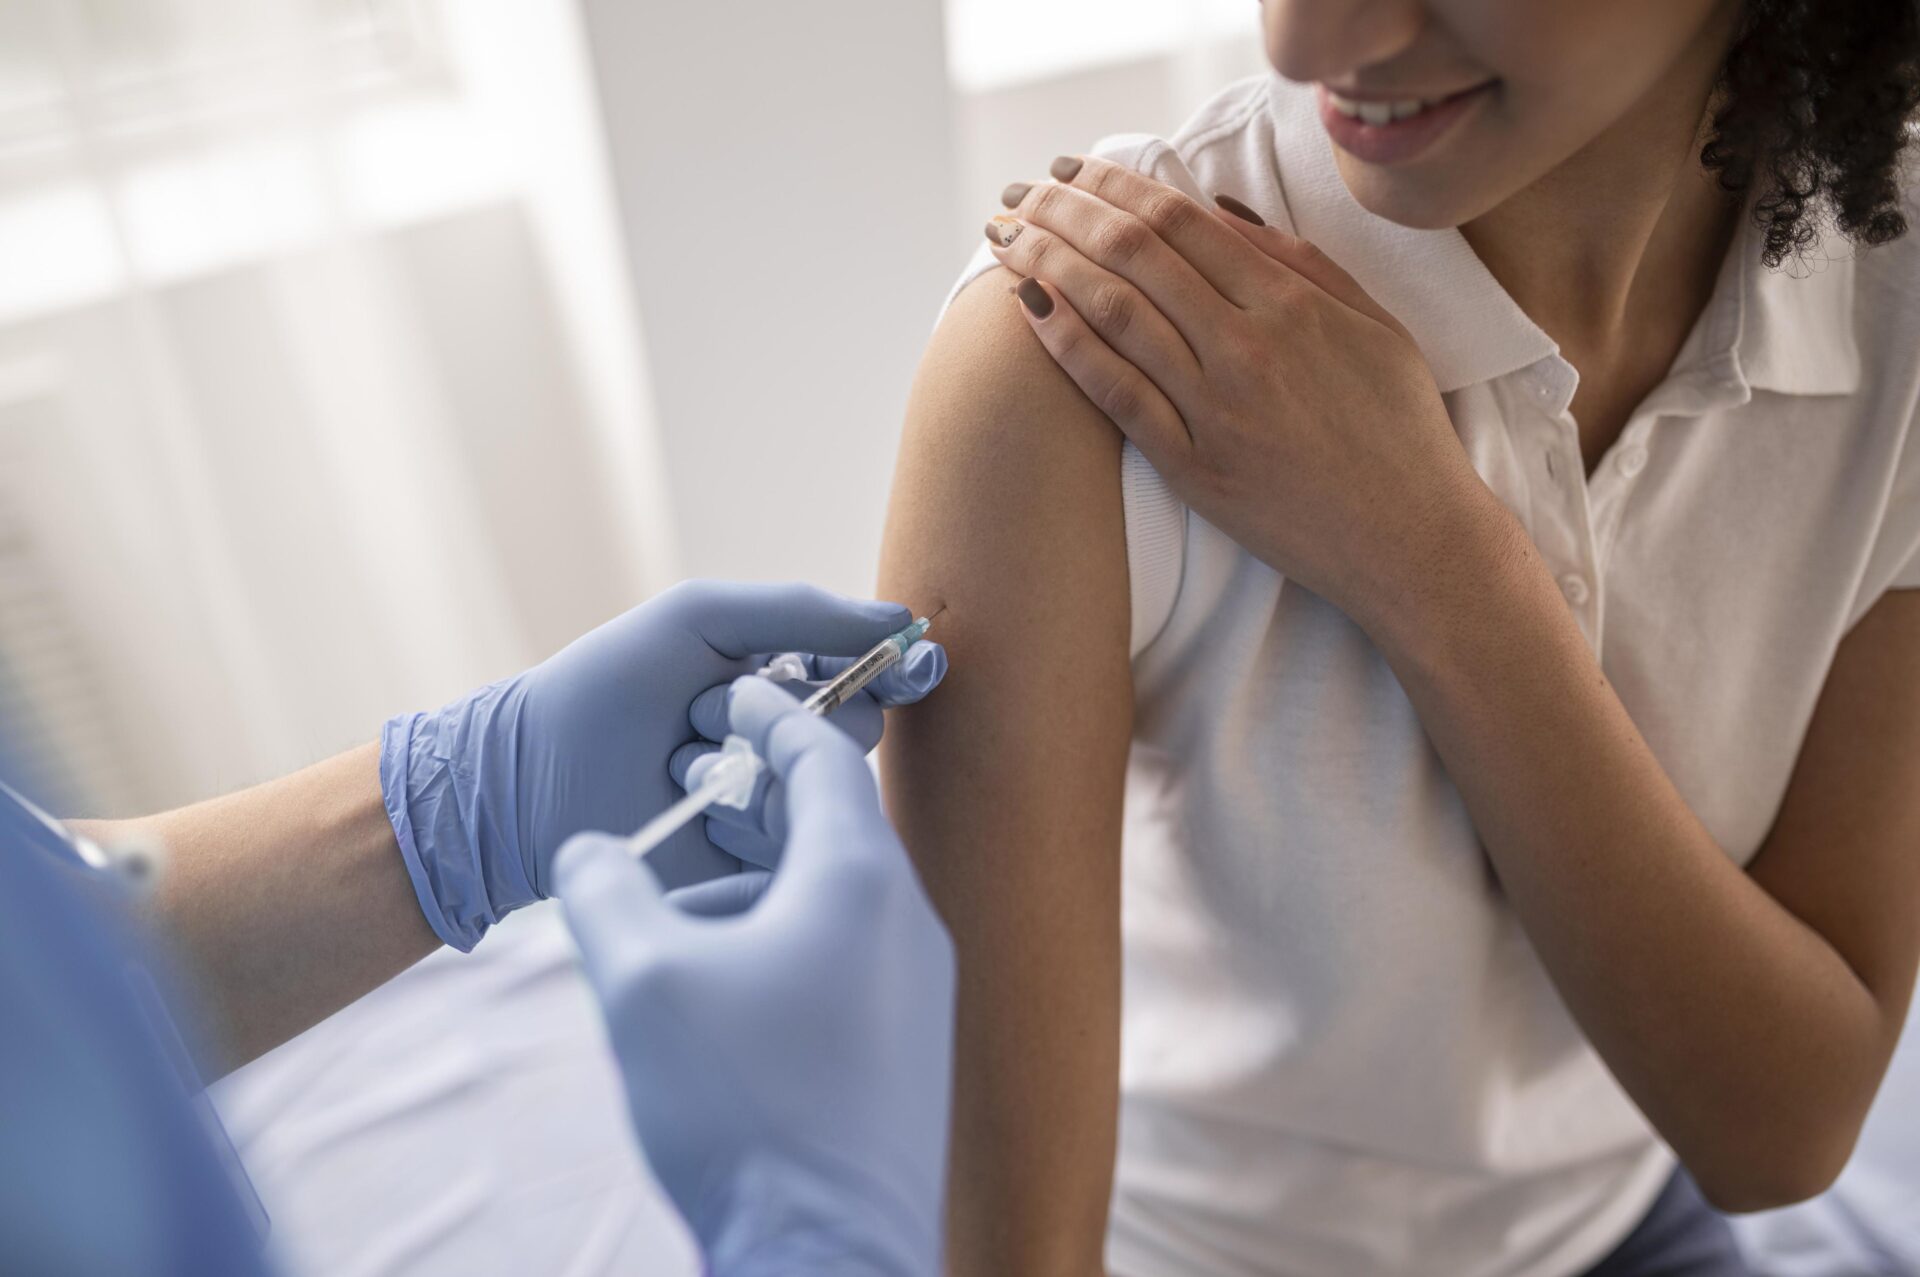 Vacuna del VPH: ¿Por qué es tan importante?